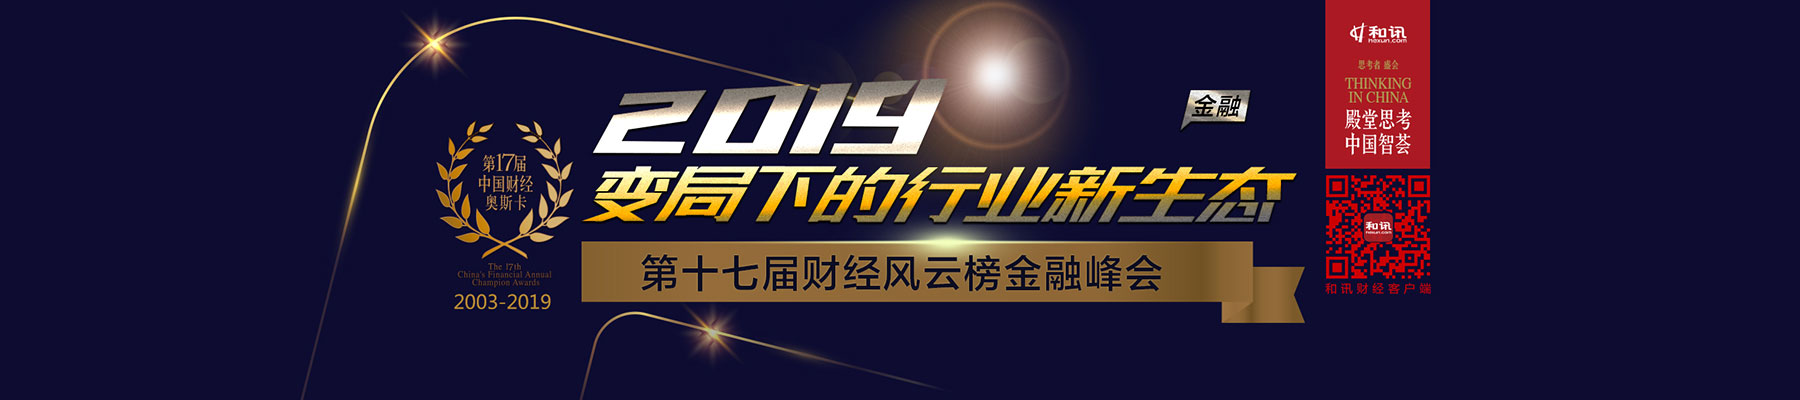 变局下的行业新生态 和讯网第十七届中国财经风云榜金融峰会12月21日将在上海举办 